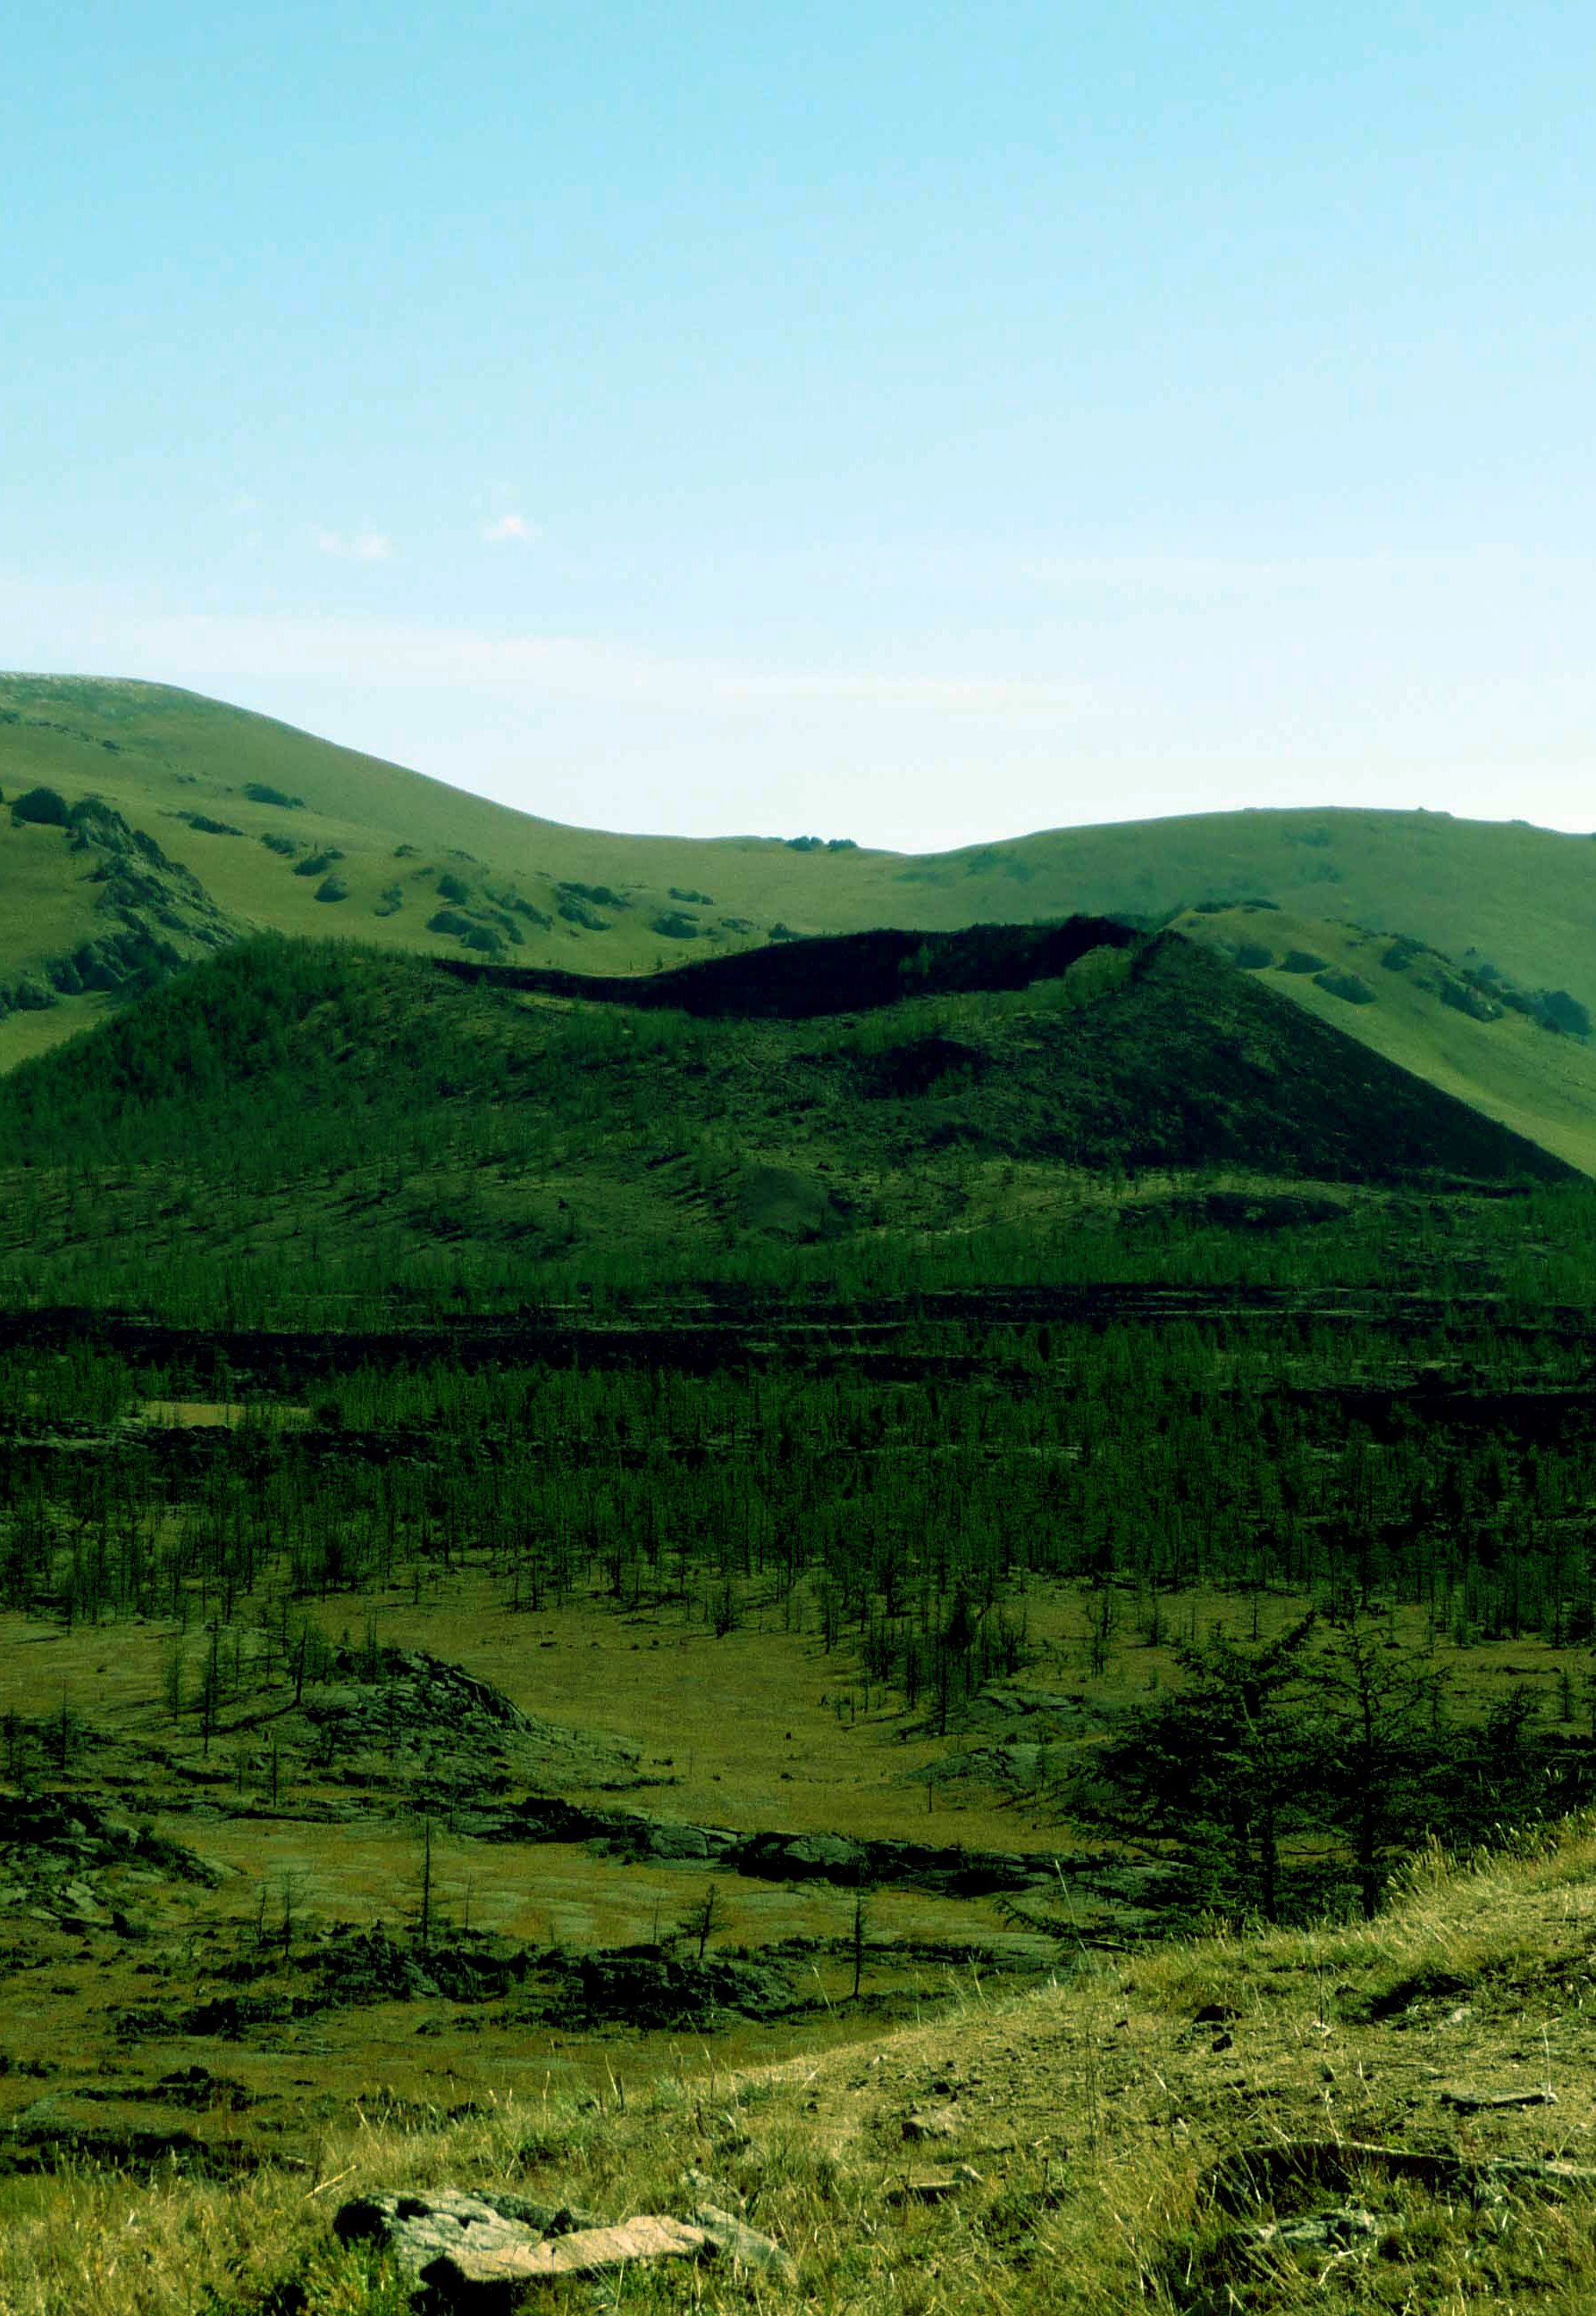 Khorgo extinct volcano